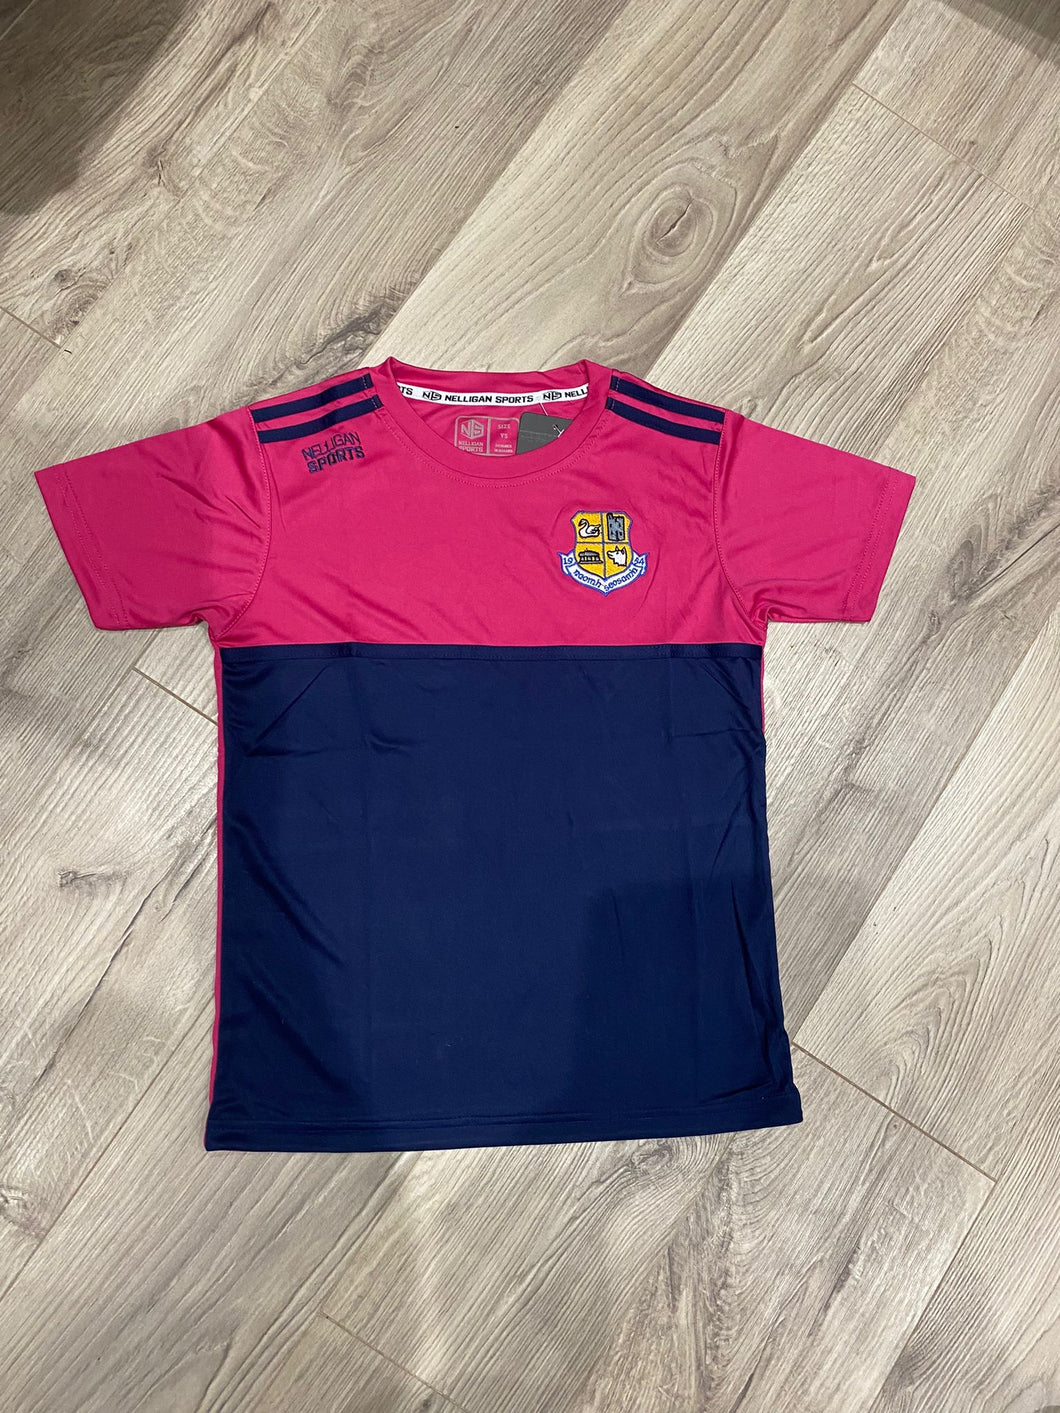 T-Shirt (Navy/Pink) - St Joseph’s